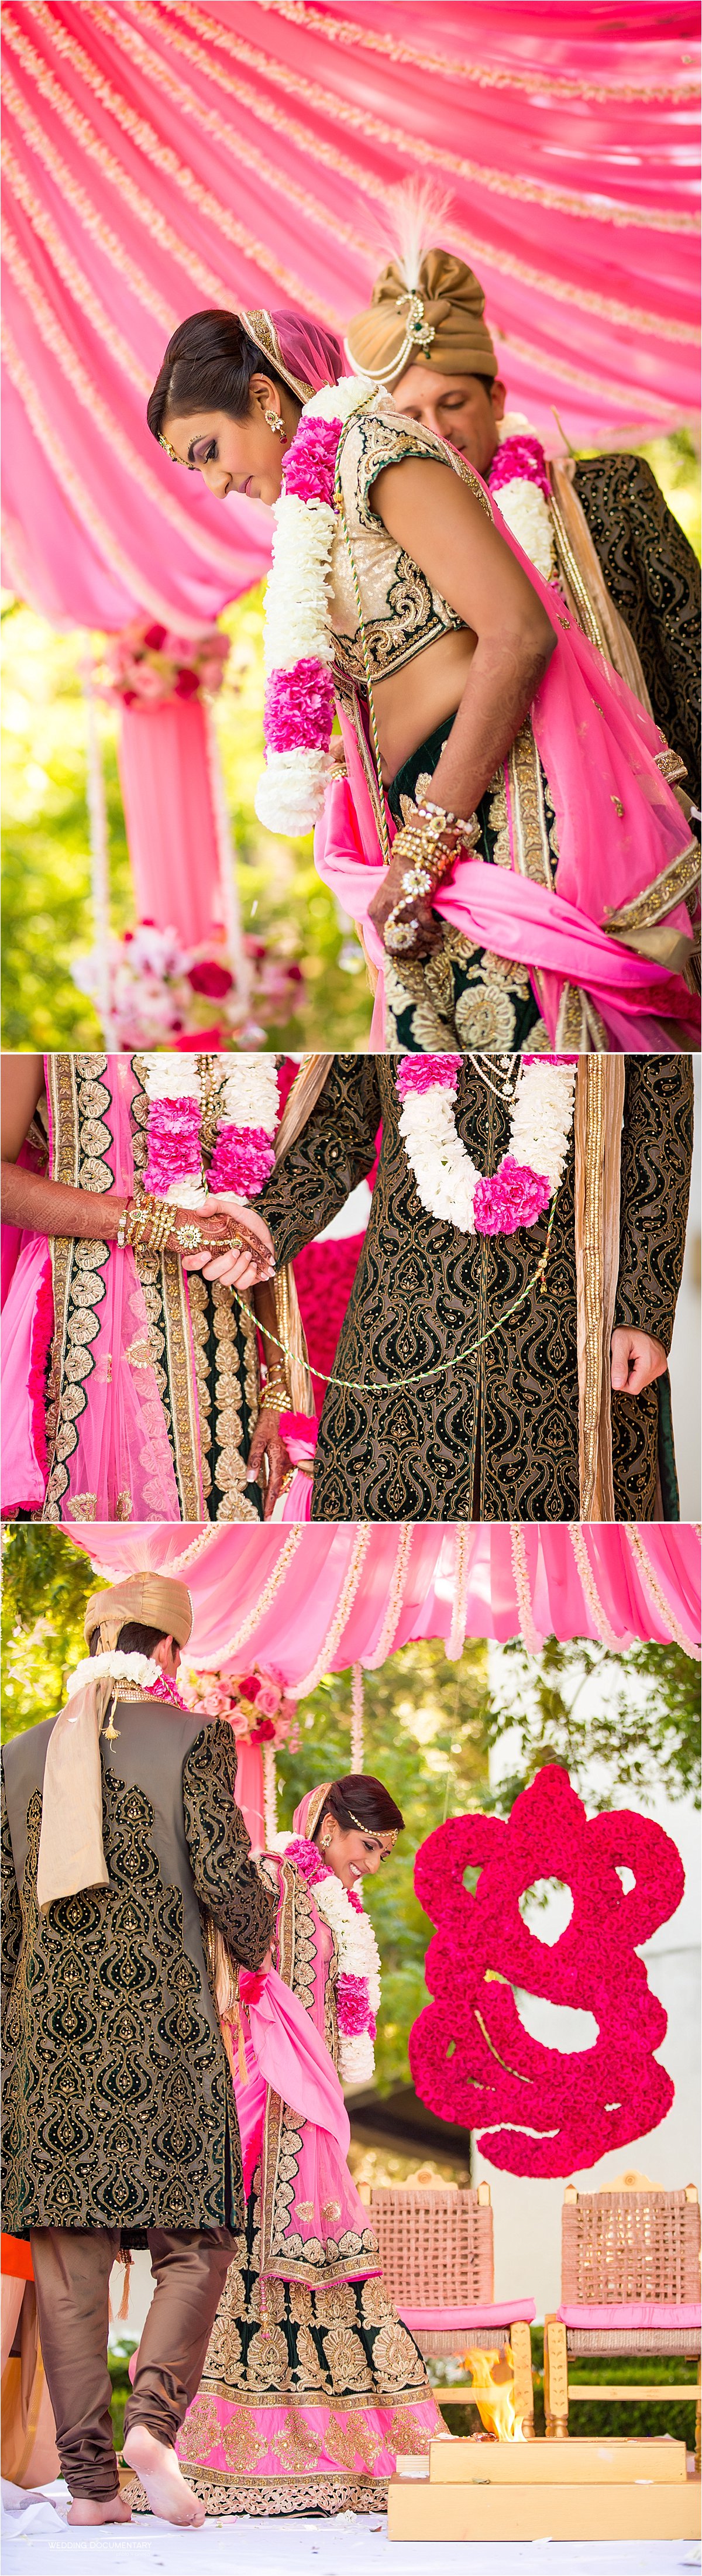 Indian_Wedding_Photos_Wente_Vineyards_Livermore_0019.jpg